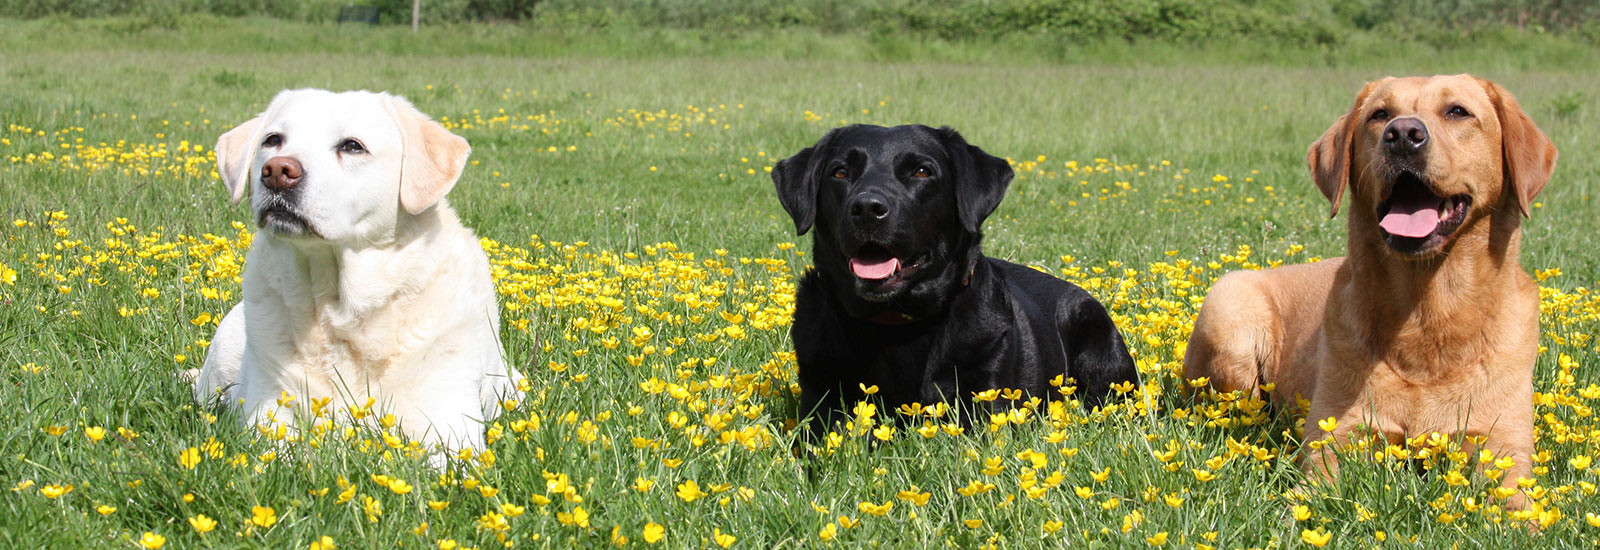 Karen Pryor Academy Dog Trainer Resume Sample Datenschutz – Wuff Akademie Die Hundeschule Mit Pfiff Karen …